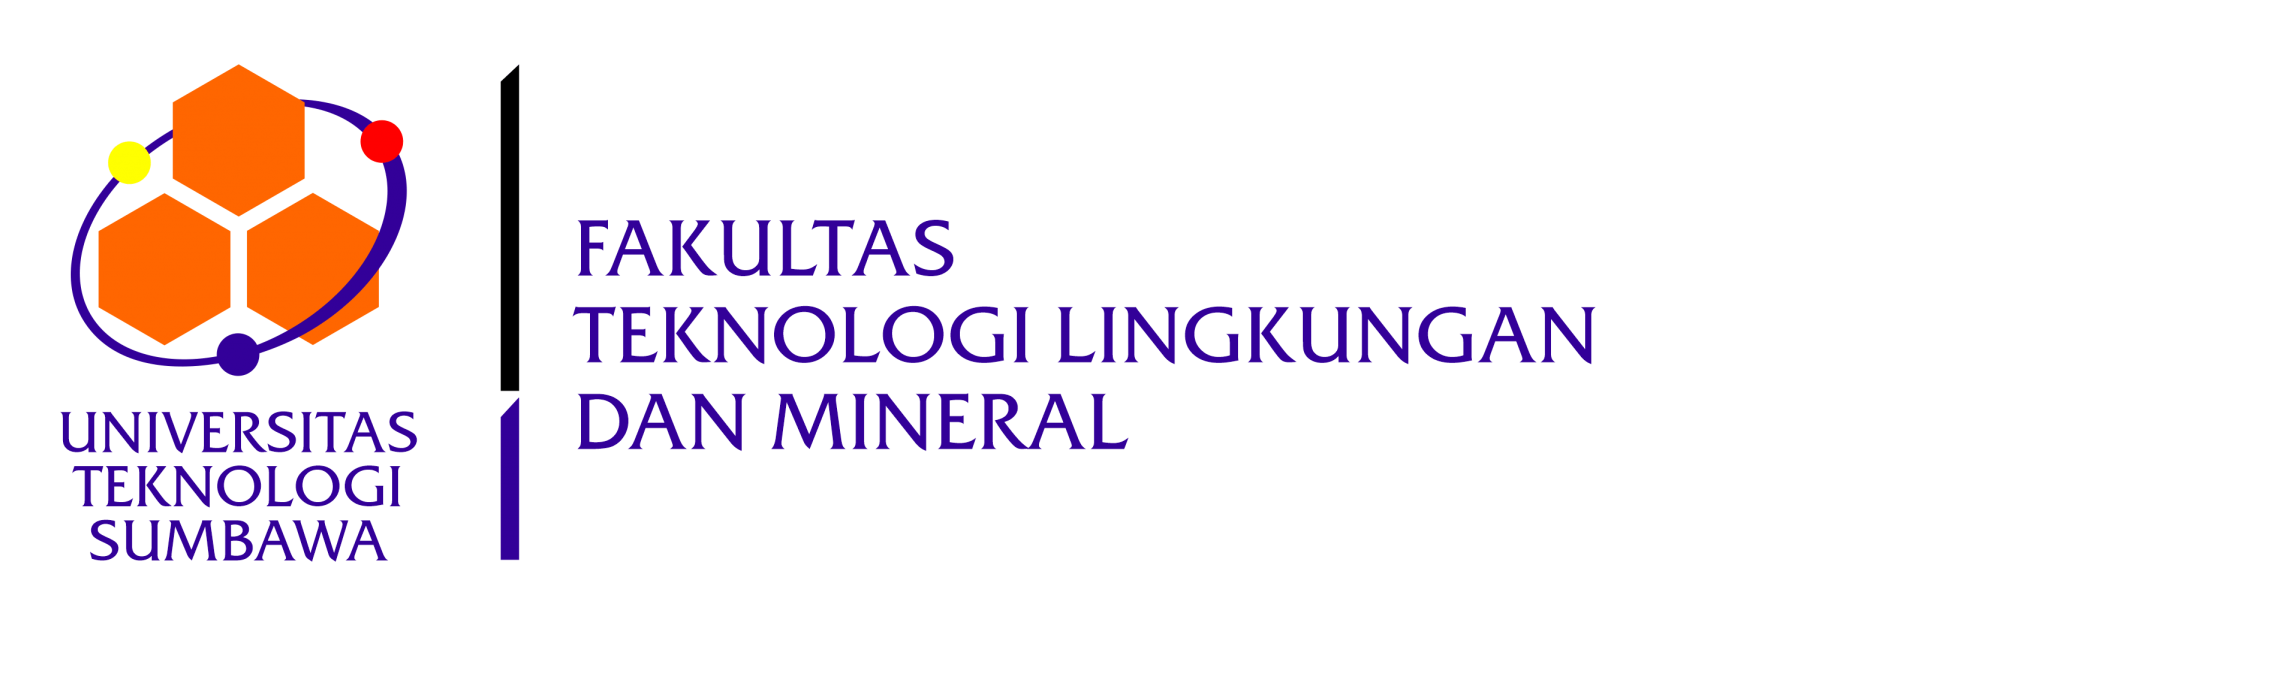 Fakultas Teknologi Lingkungan & Mineral